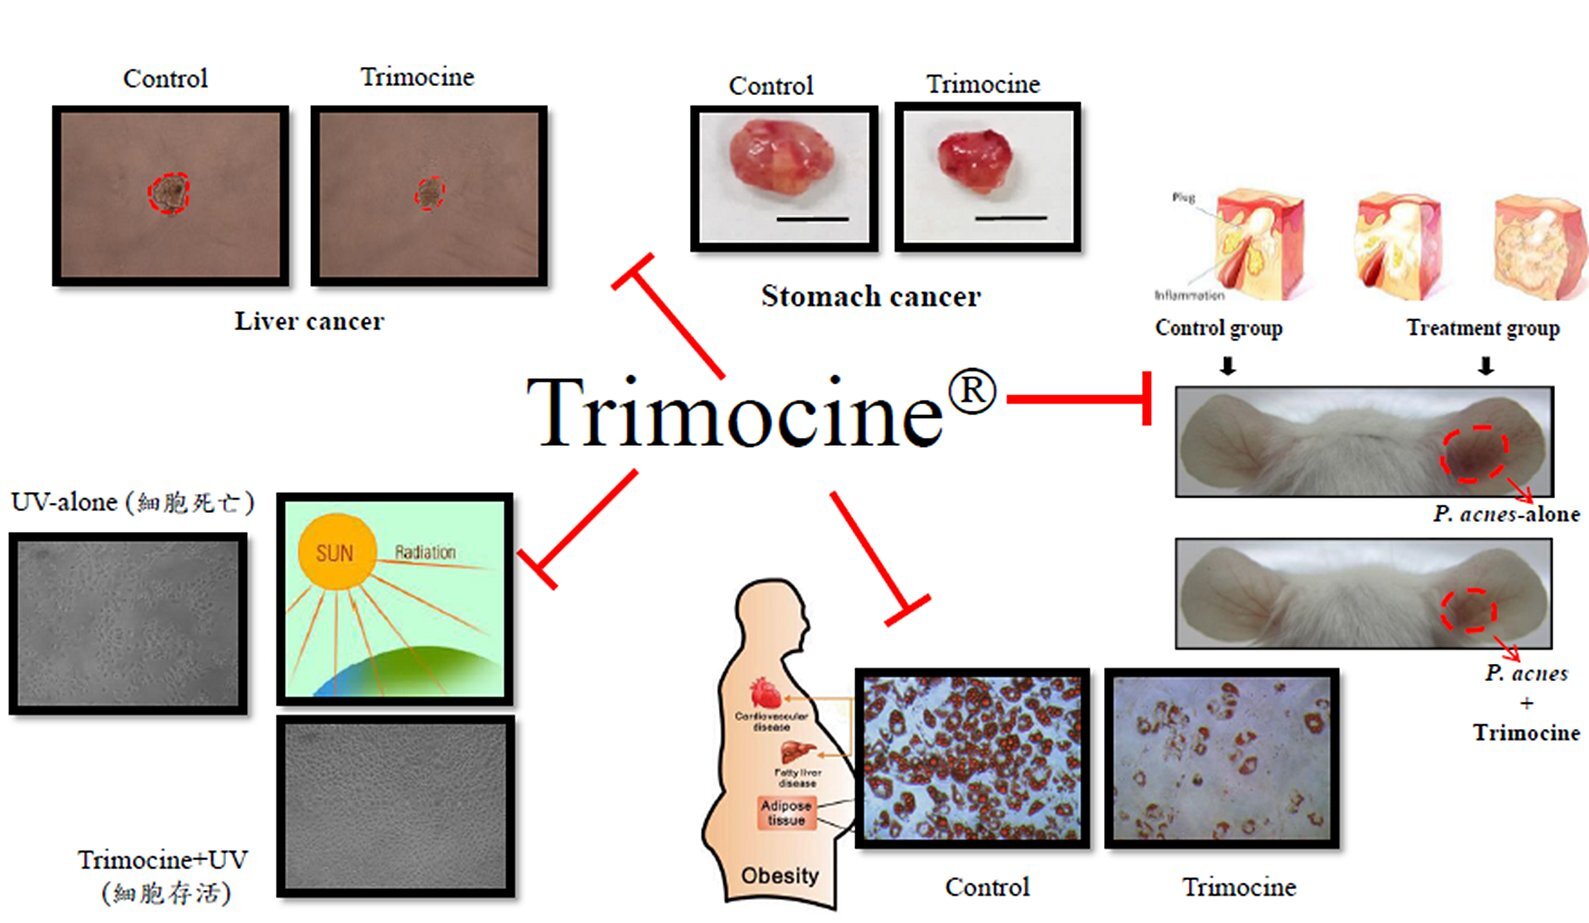 山苦瓜有效成分(TRIMOCINE)之功效分析與產品開發